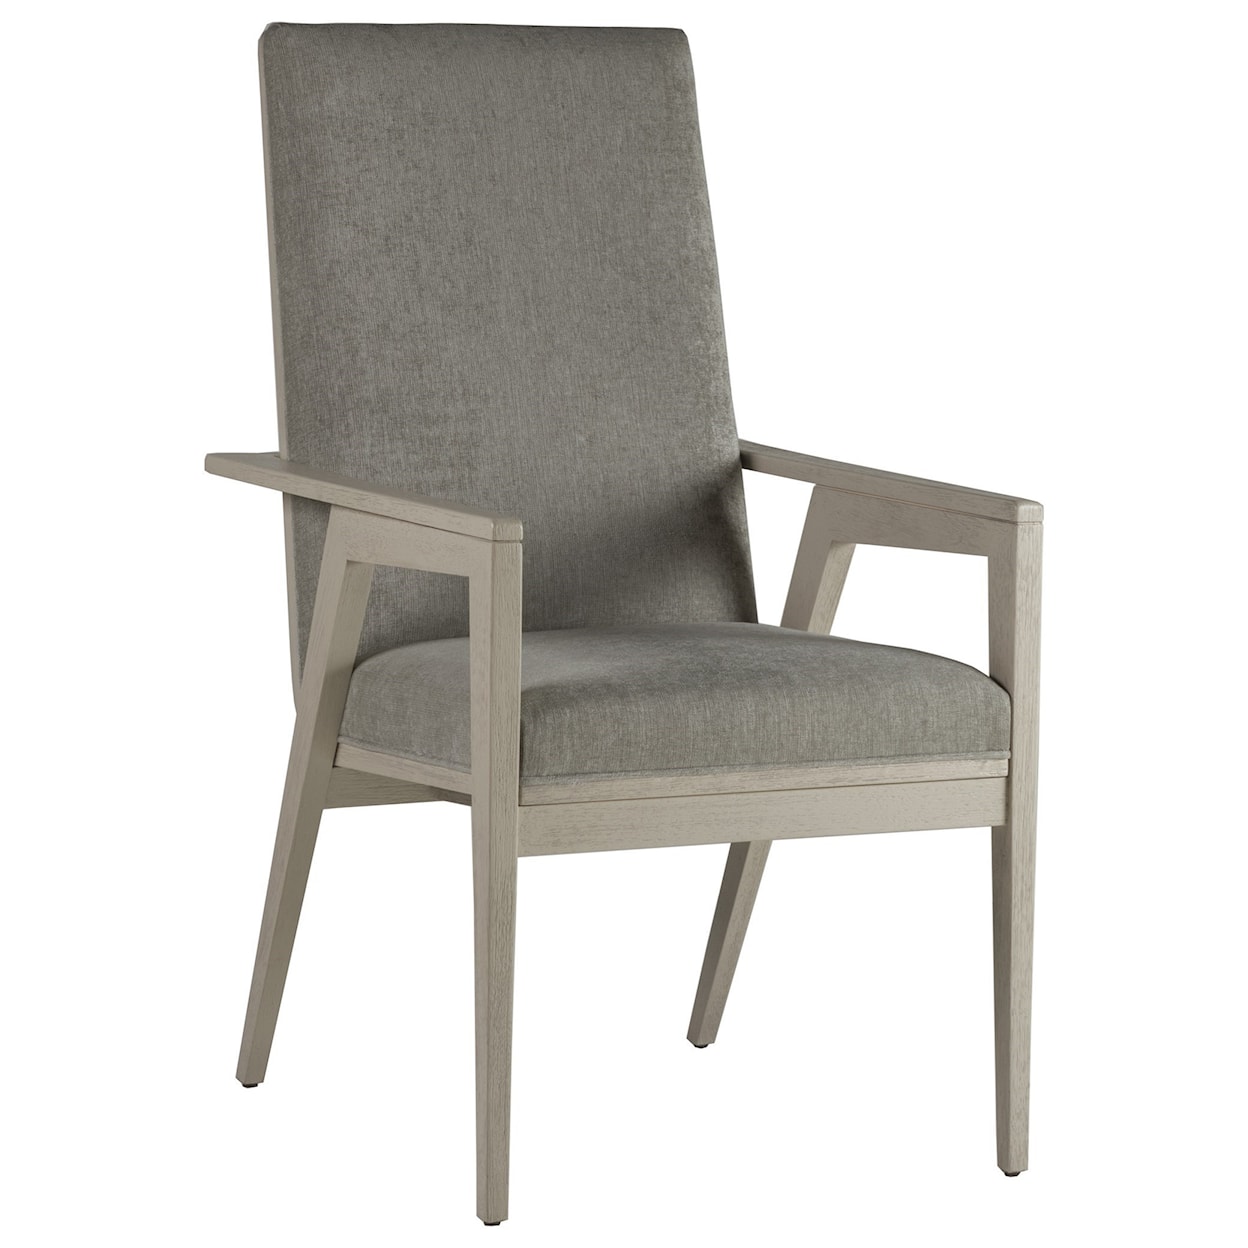 Artistica Arturo Arm Chair